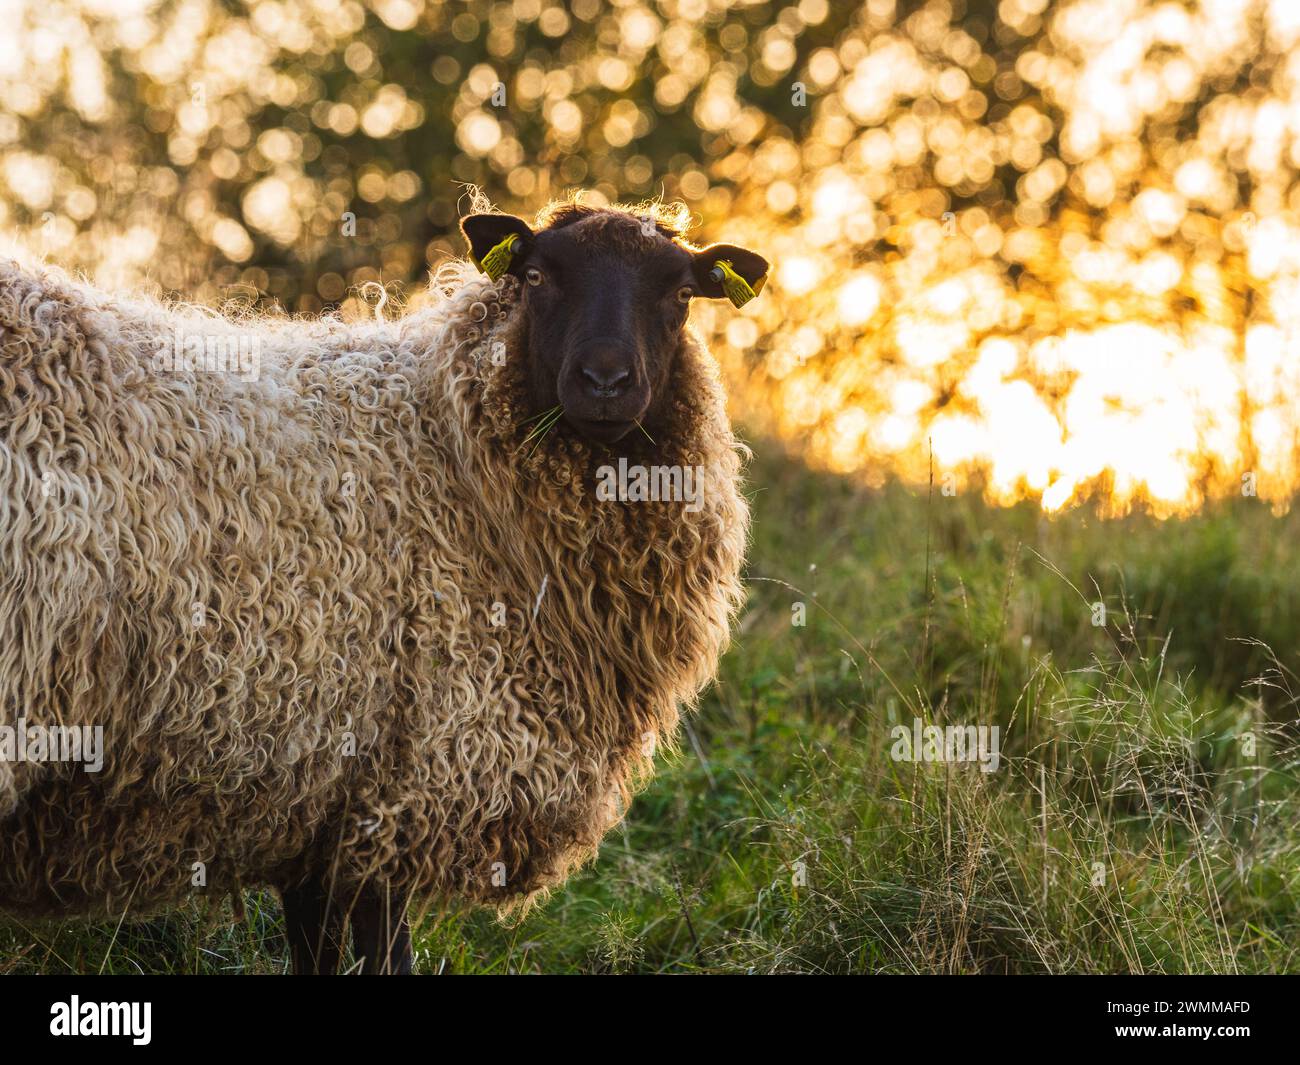 Un mouton seul est capturé tout en pâturant sur l'herbe verdoyante d'un pâturage suédois, avec la lumière dorée du soleil couchant filtrant à travers les arbres Banque D'Images